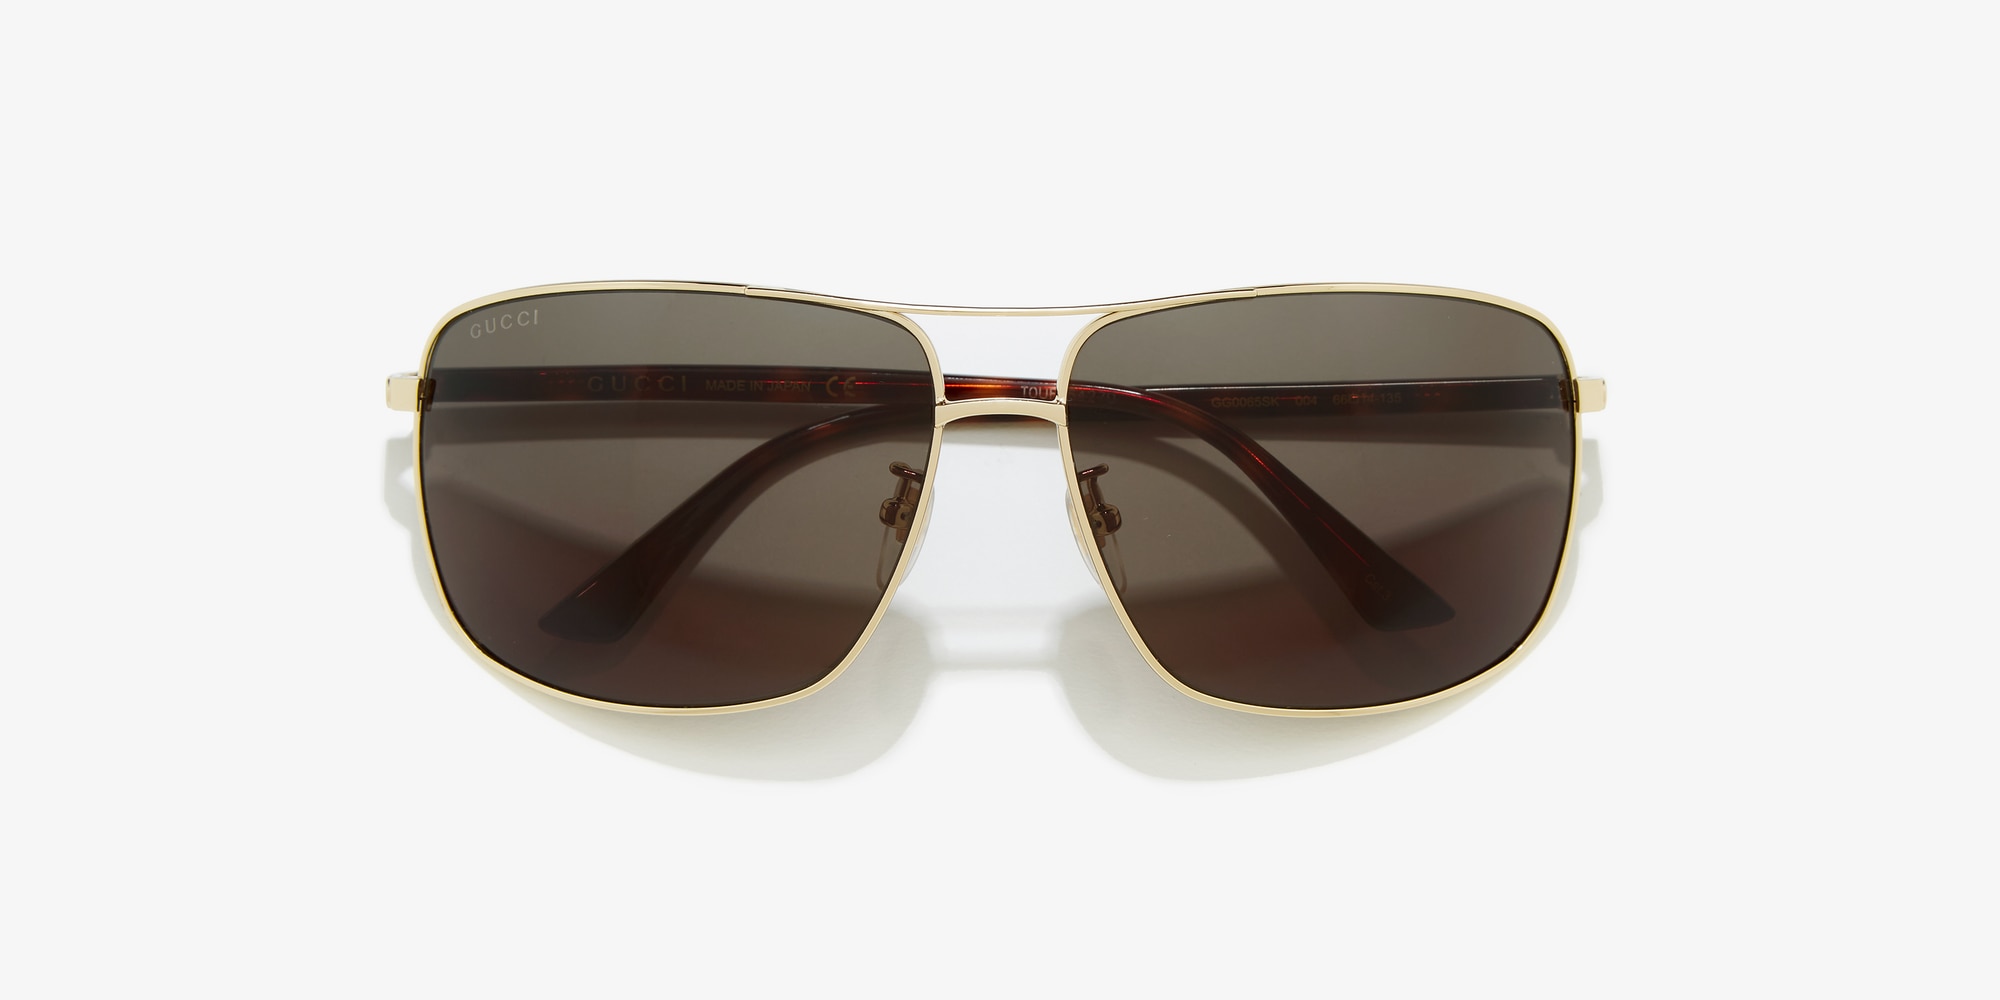 gg0065sk sunglasses